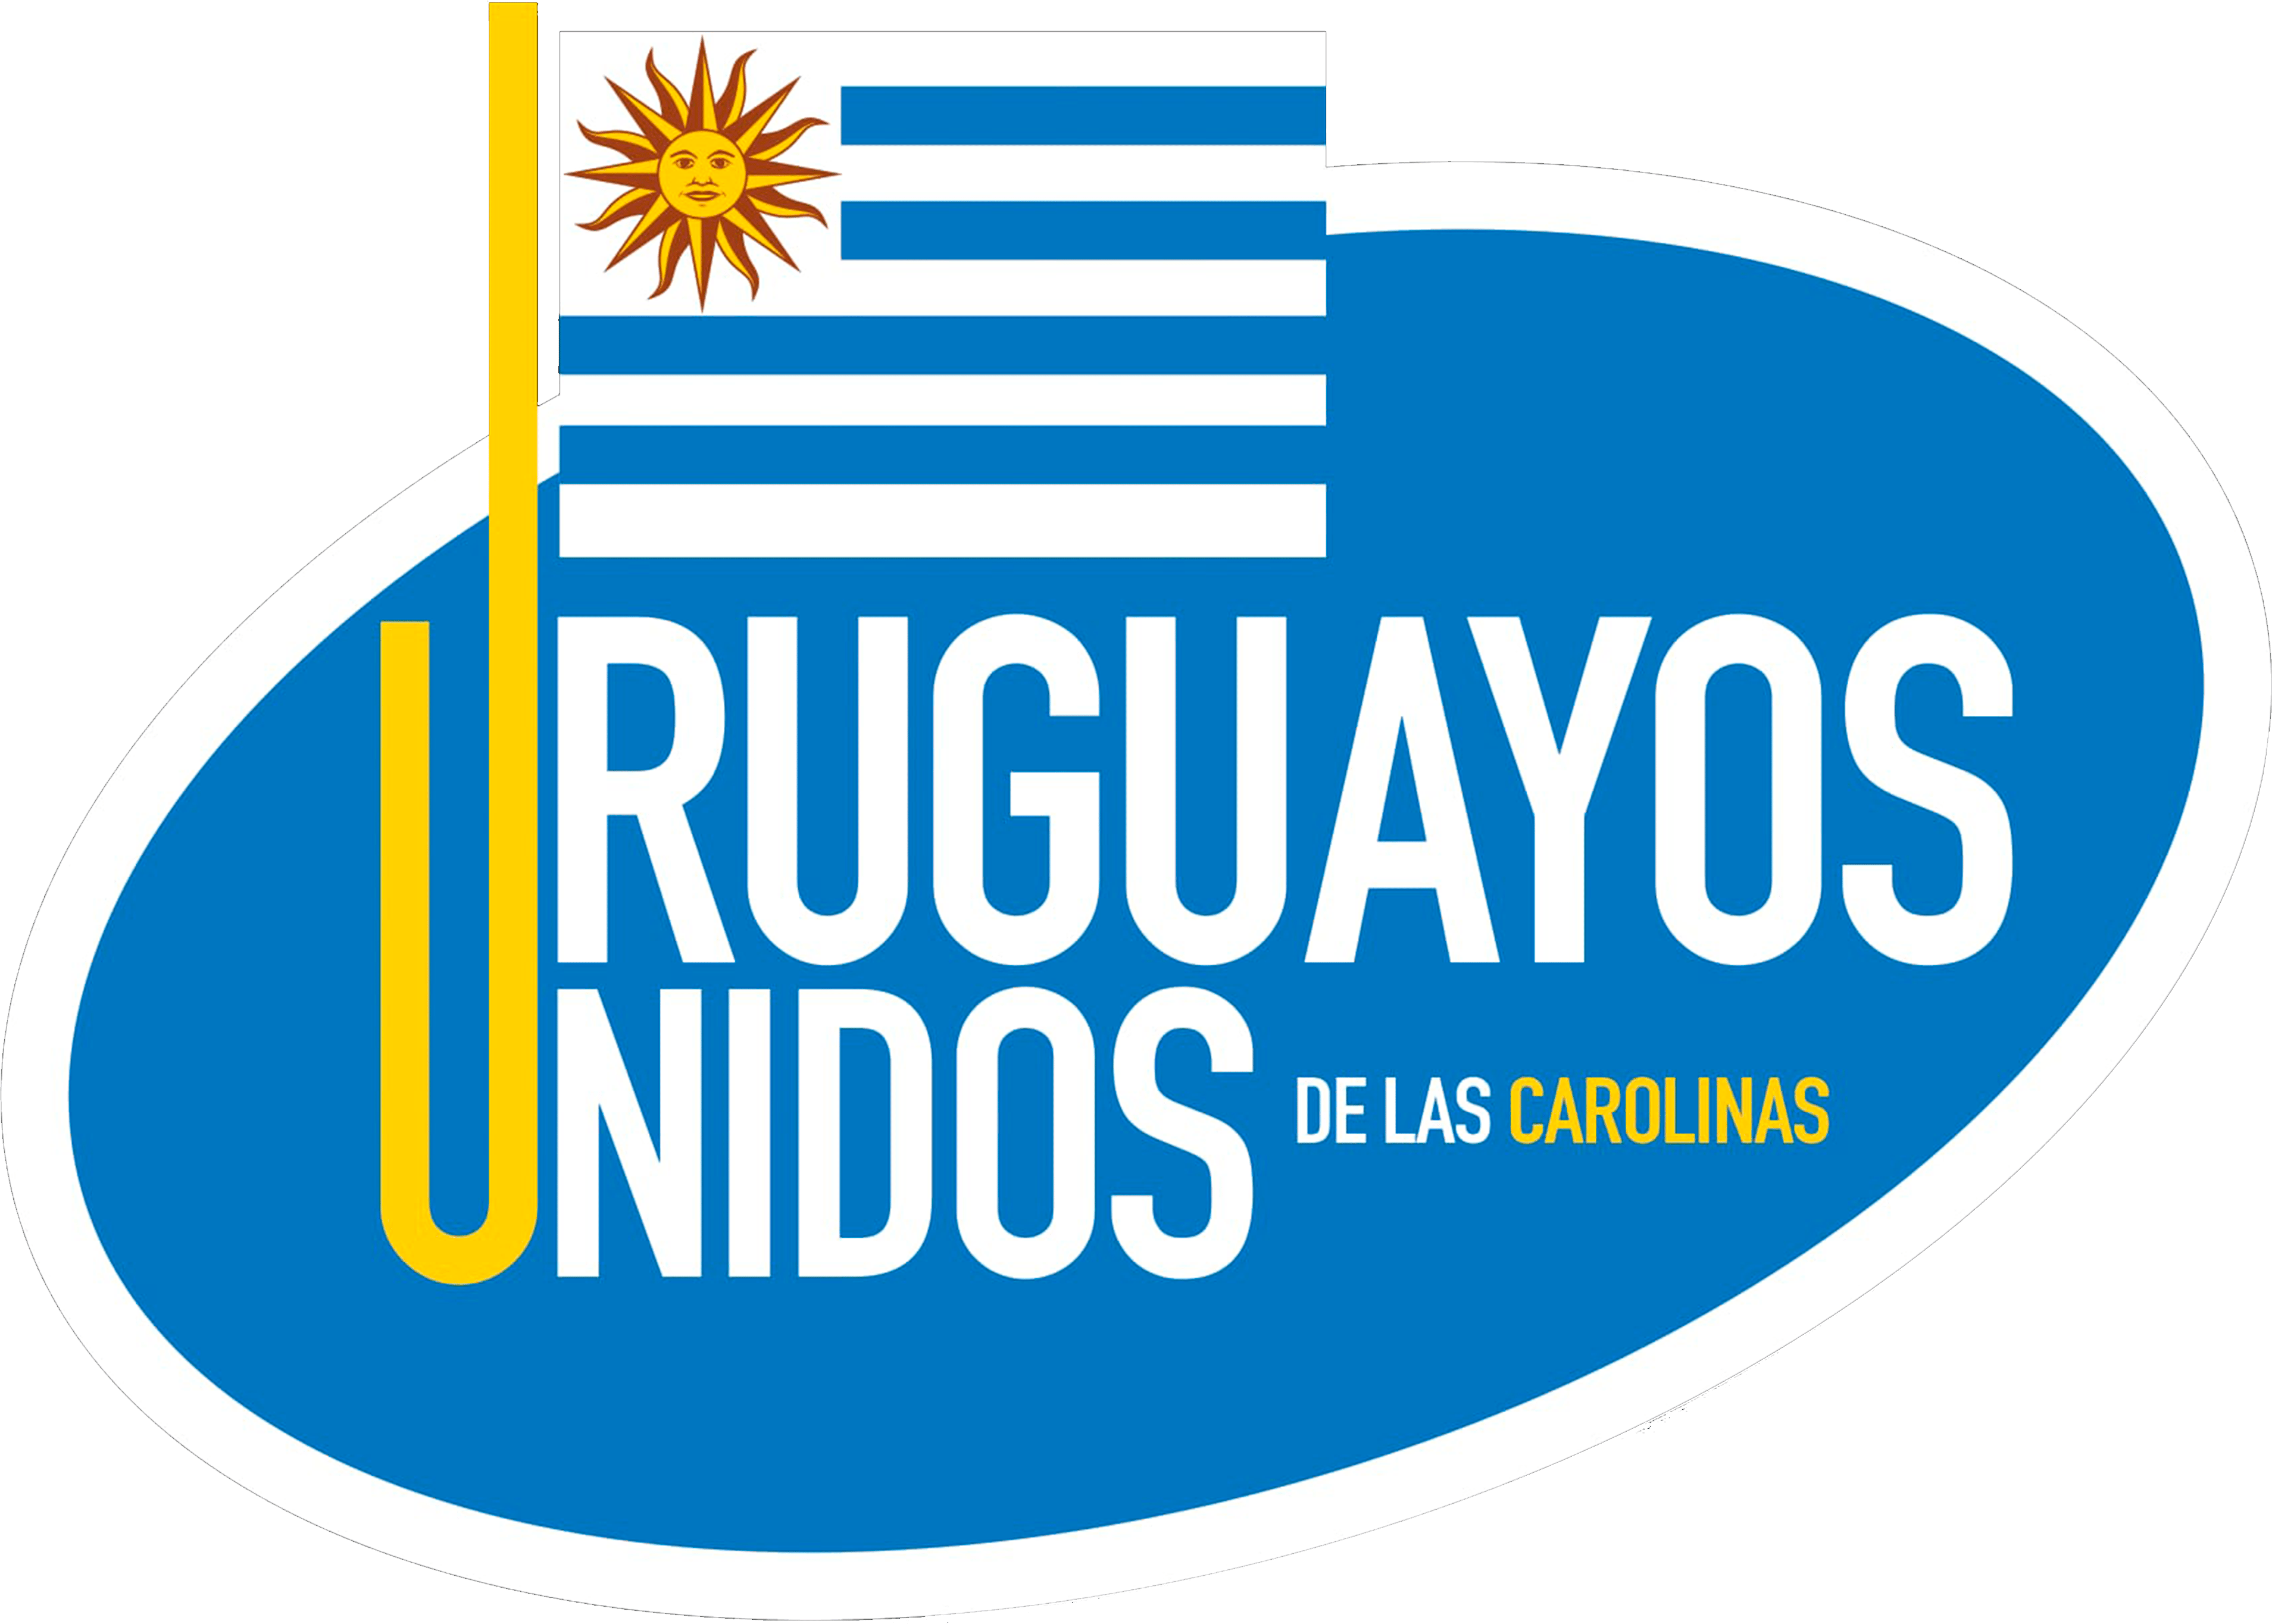 URUGUAYOS UNIDOS POR LAS CAROLINAS